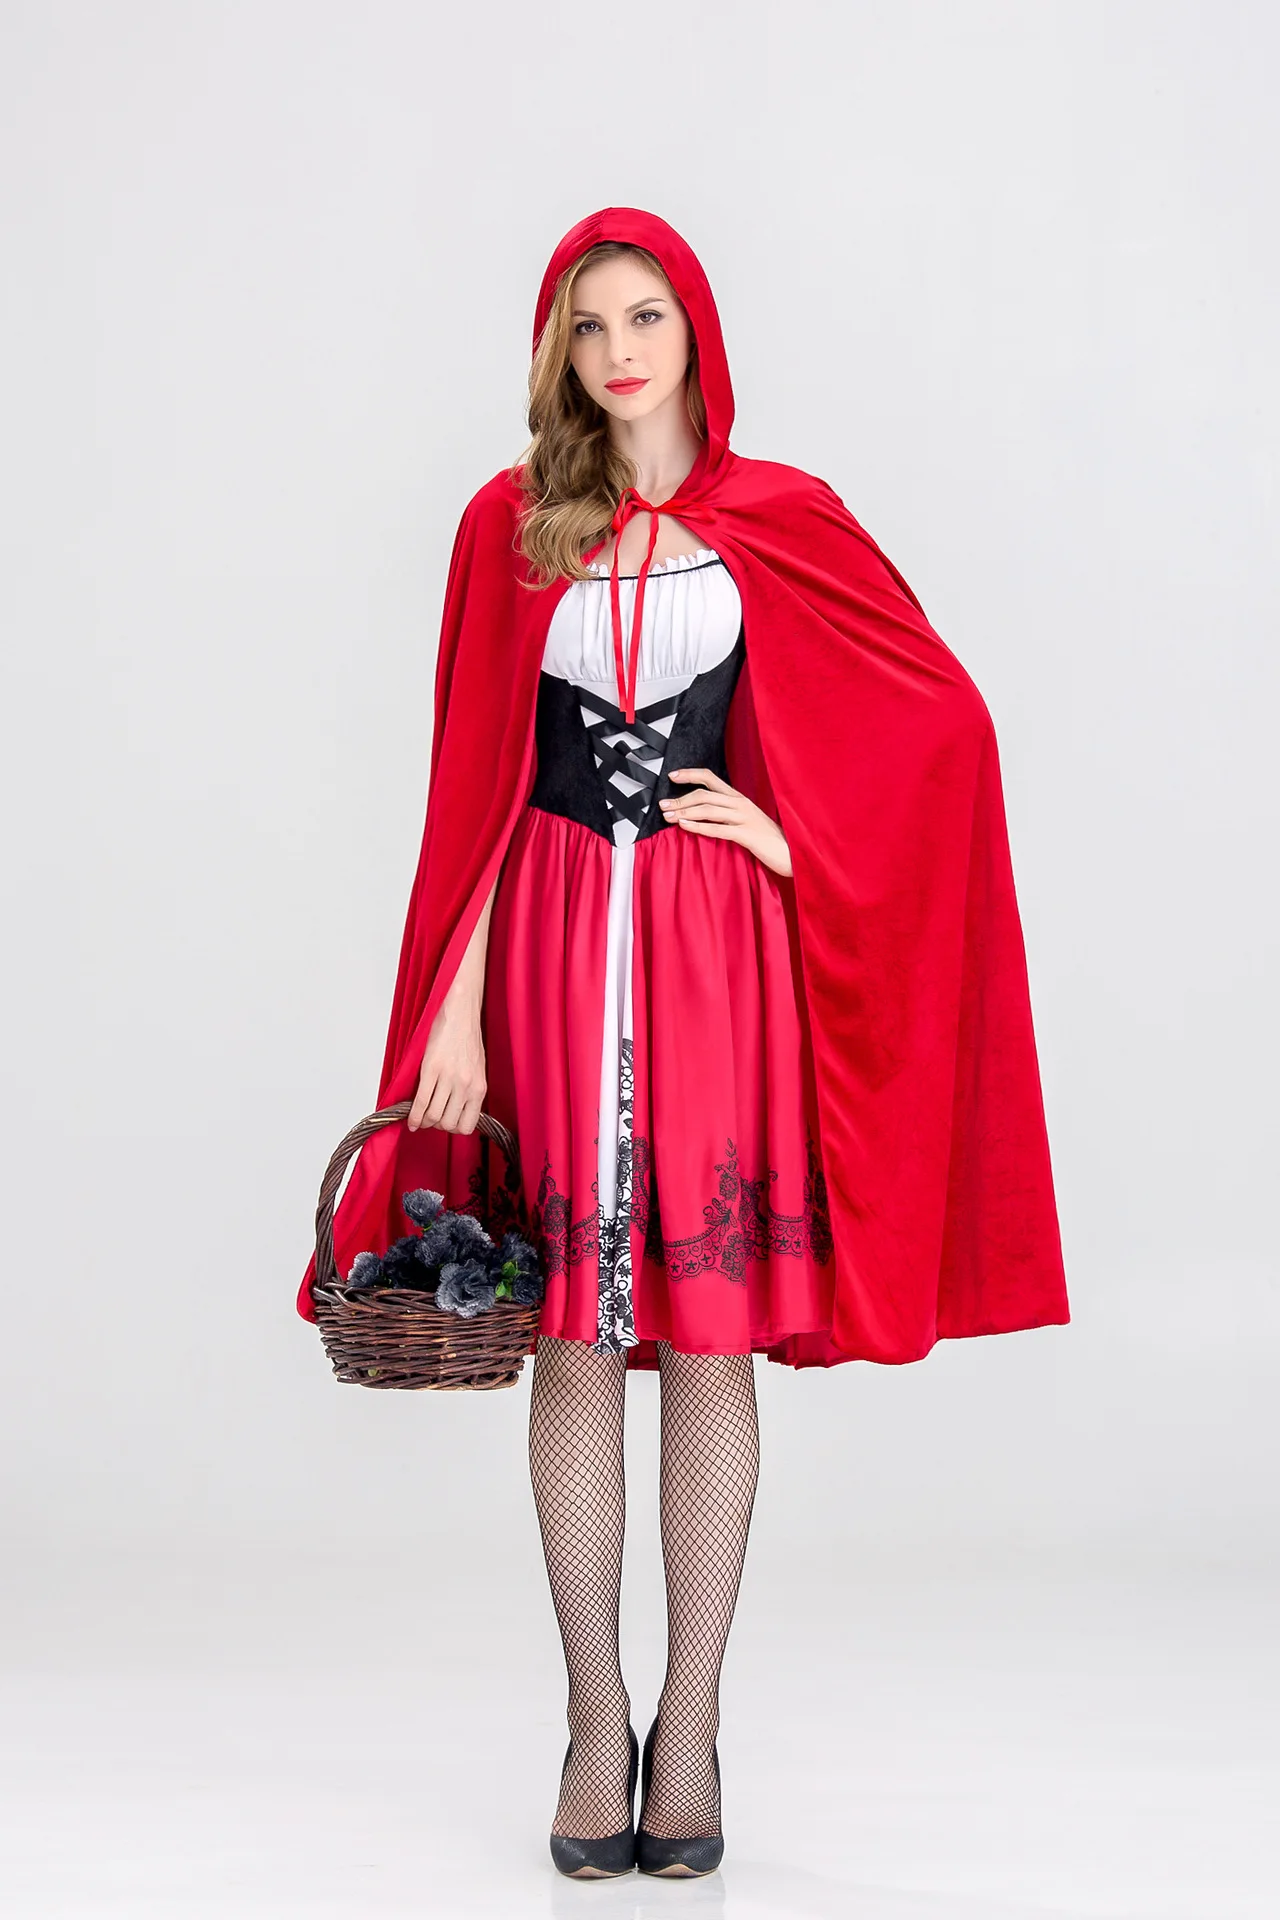 6XL, Женский костюм Красной Шапочки в стиле сказок, Красная Шапочка, плащ для взрослых, аниме, косплей, кепка, e, одежда, Хэллоуин, Пурим, вечерние платья